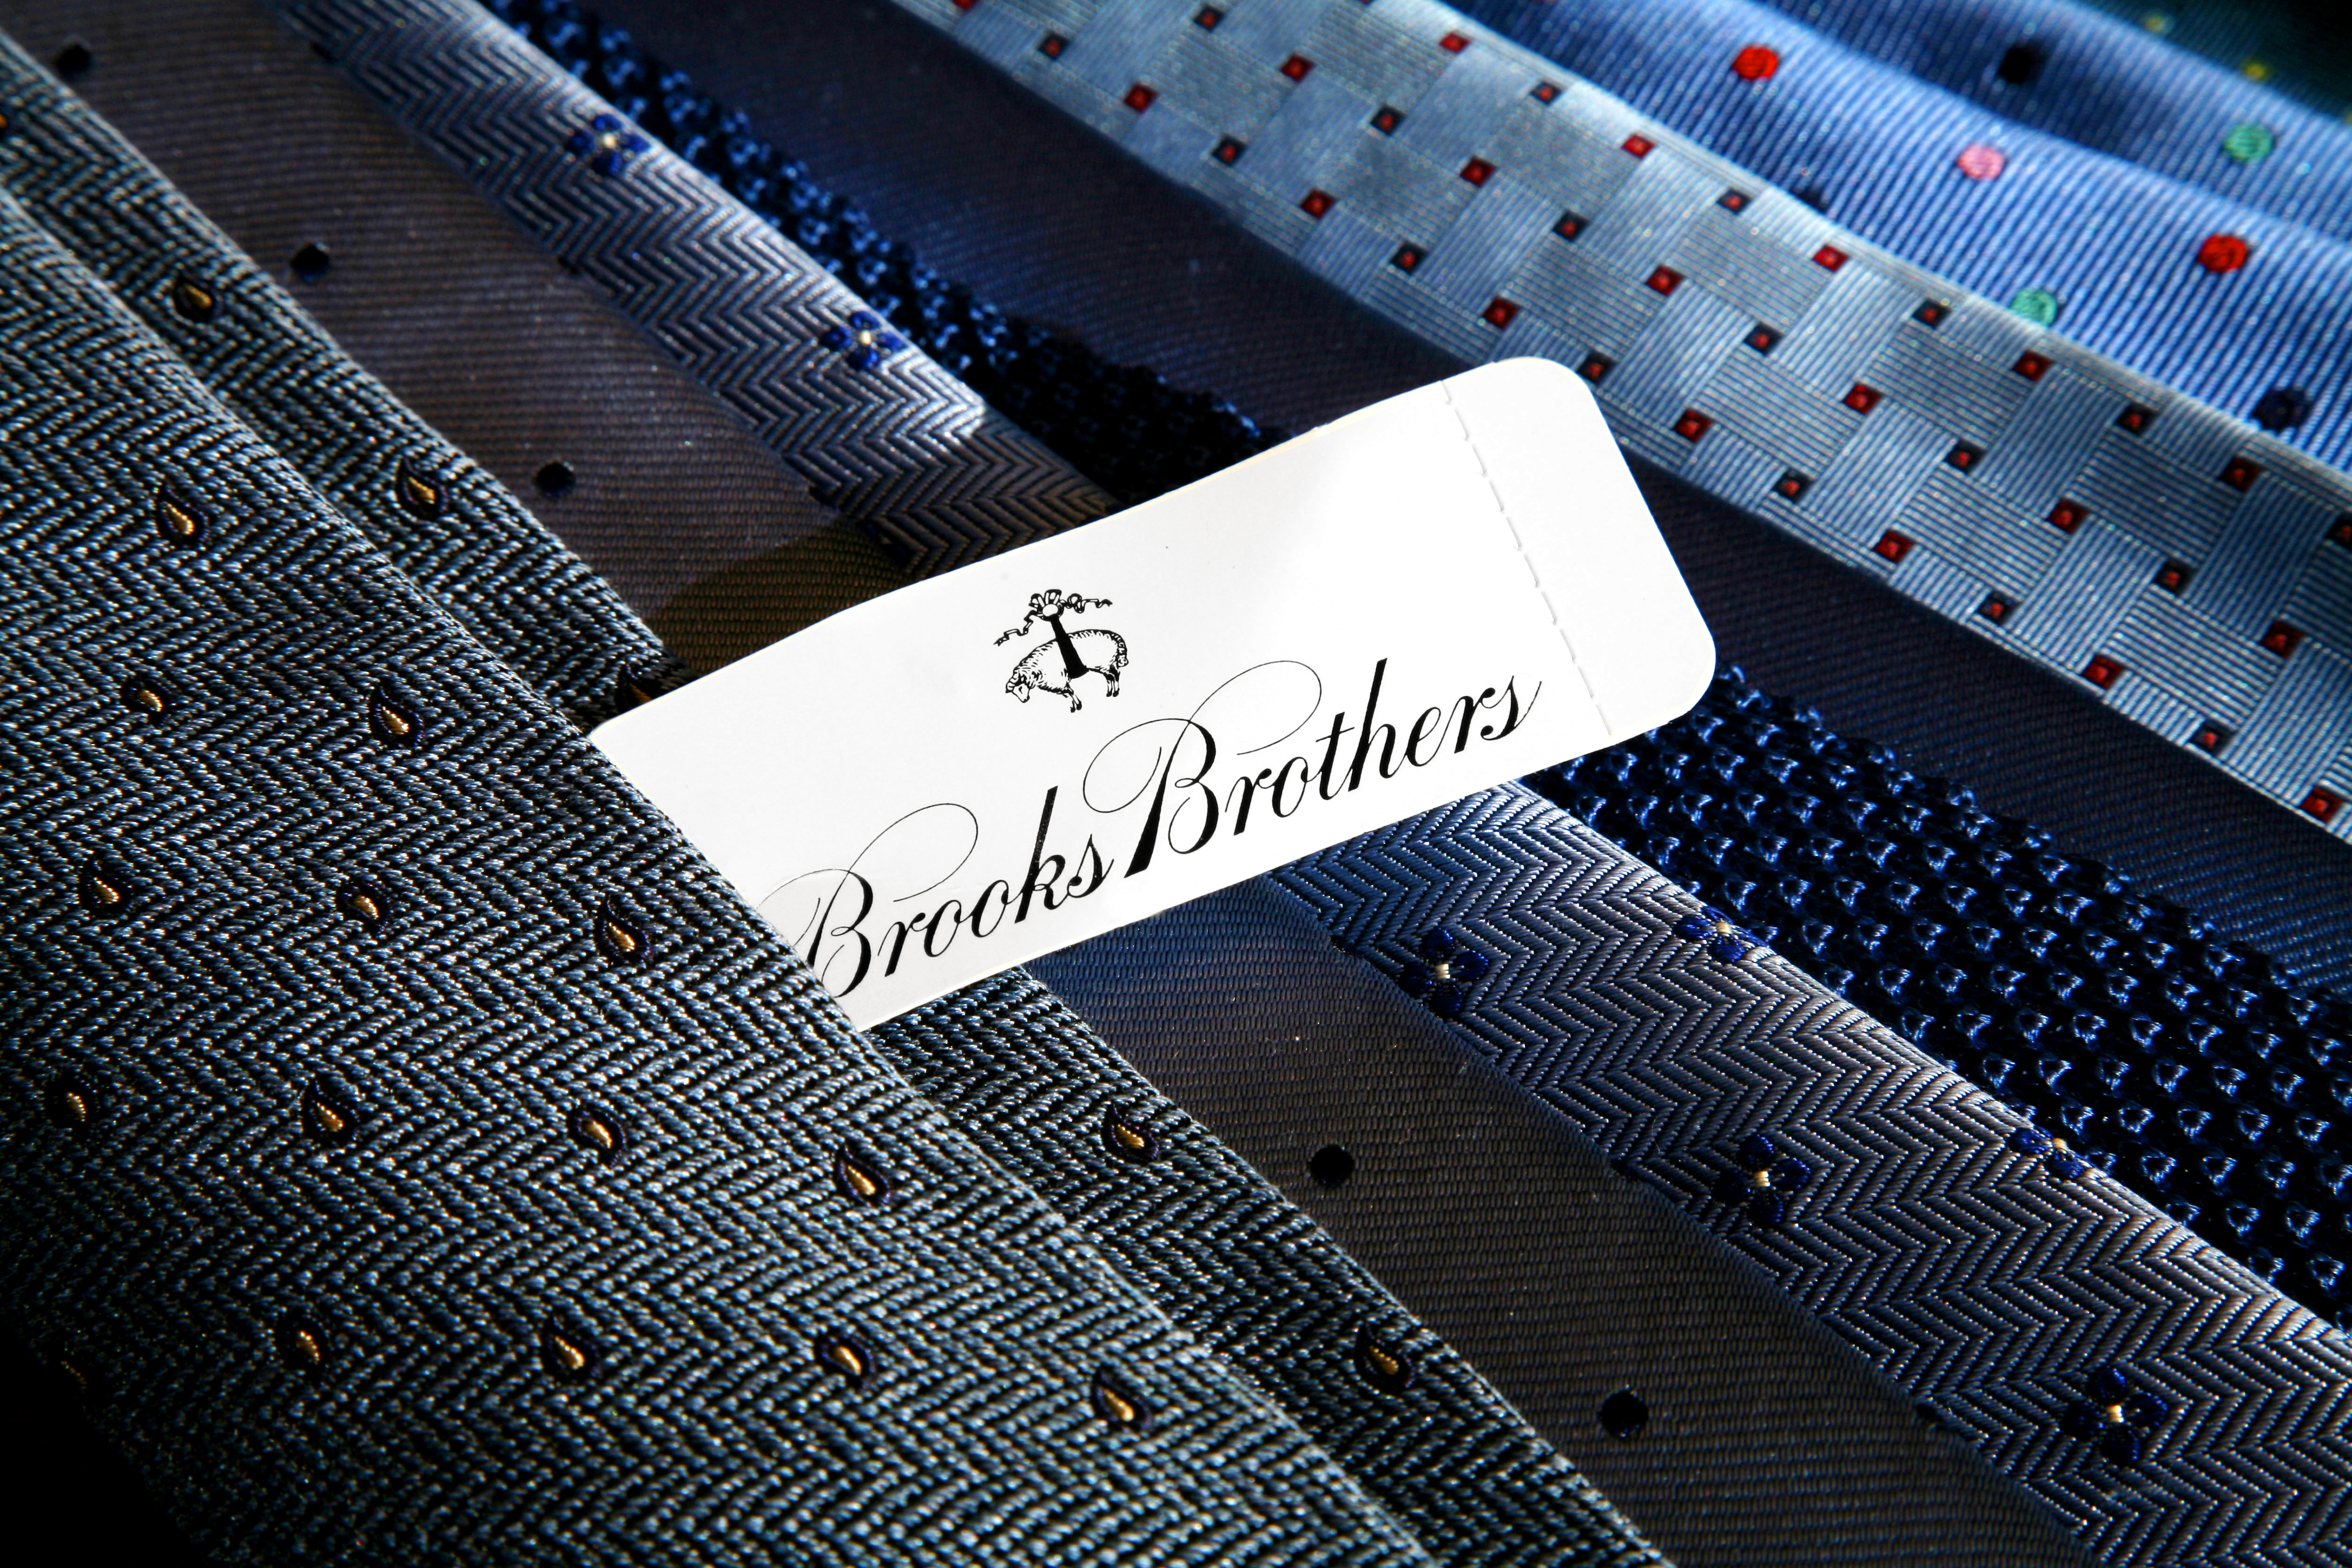 Brooks Brothers ties.